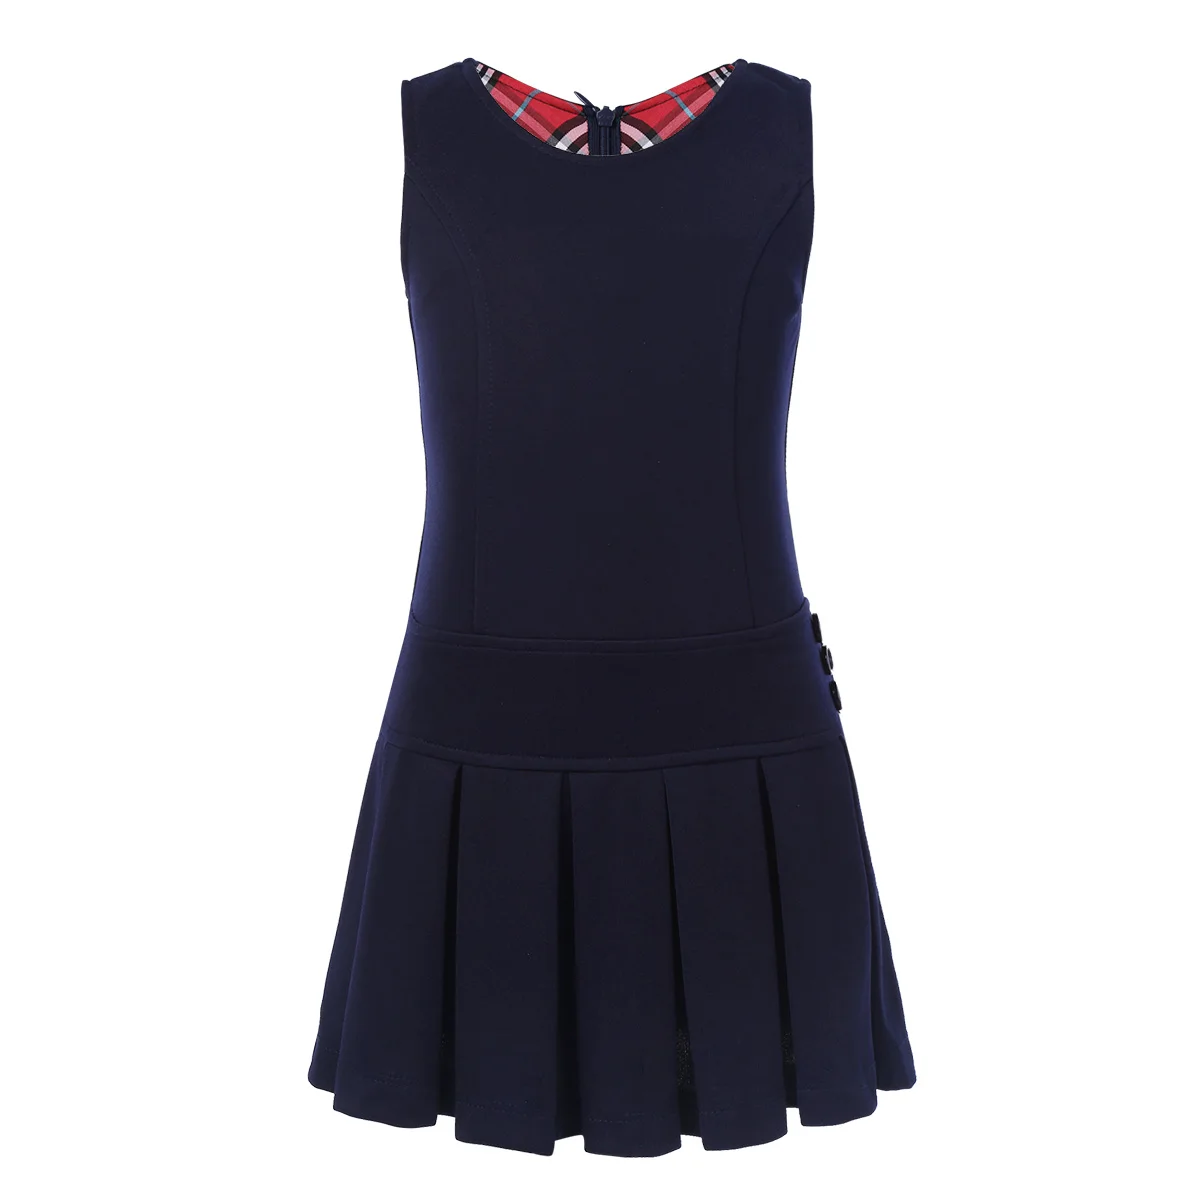 Iiniim/Детская школьная форма без рукавов для девочек; плиссированное платье с подолом; джемпер с Украшенные кнопки; вечерние школьные повседневные платья - Цвет: Navy Blue